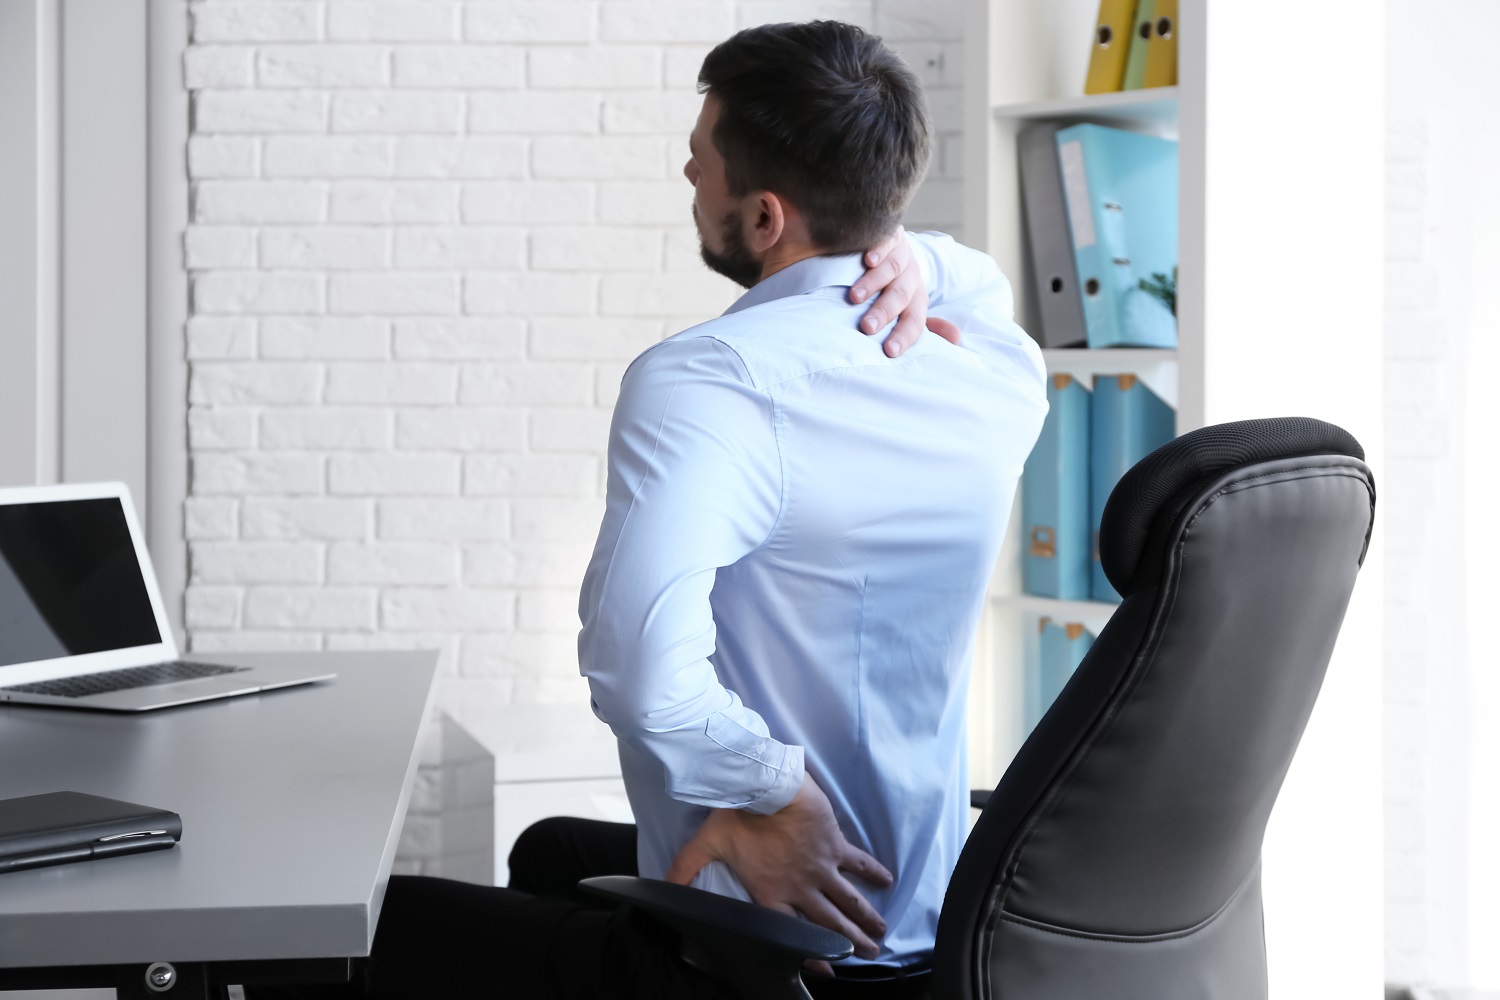 Sėdimo darbo pavojai sveikatai: kineziterapeutė pataria, kaip jų išvengti